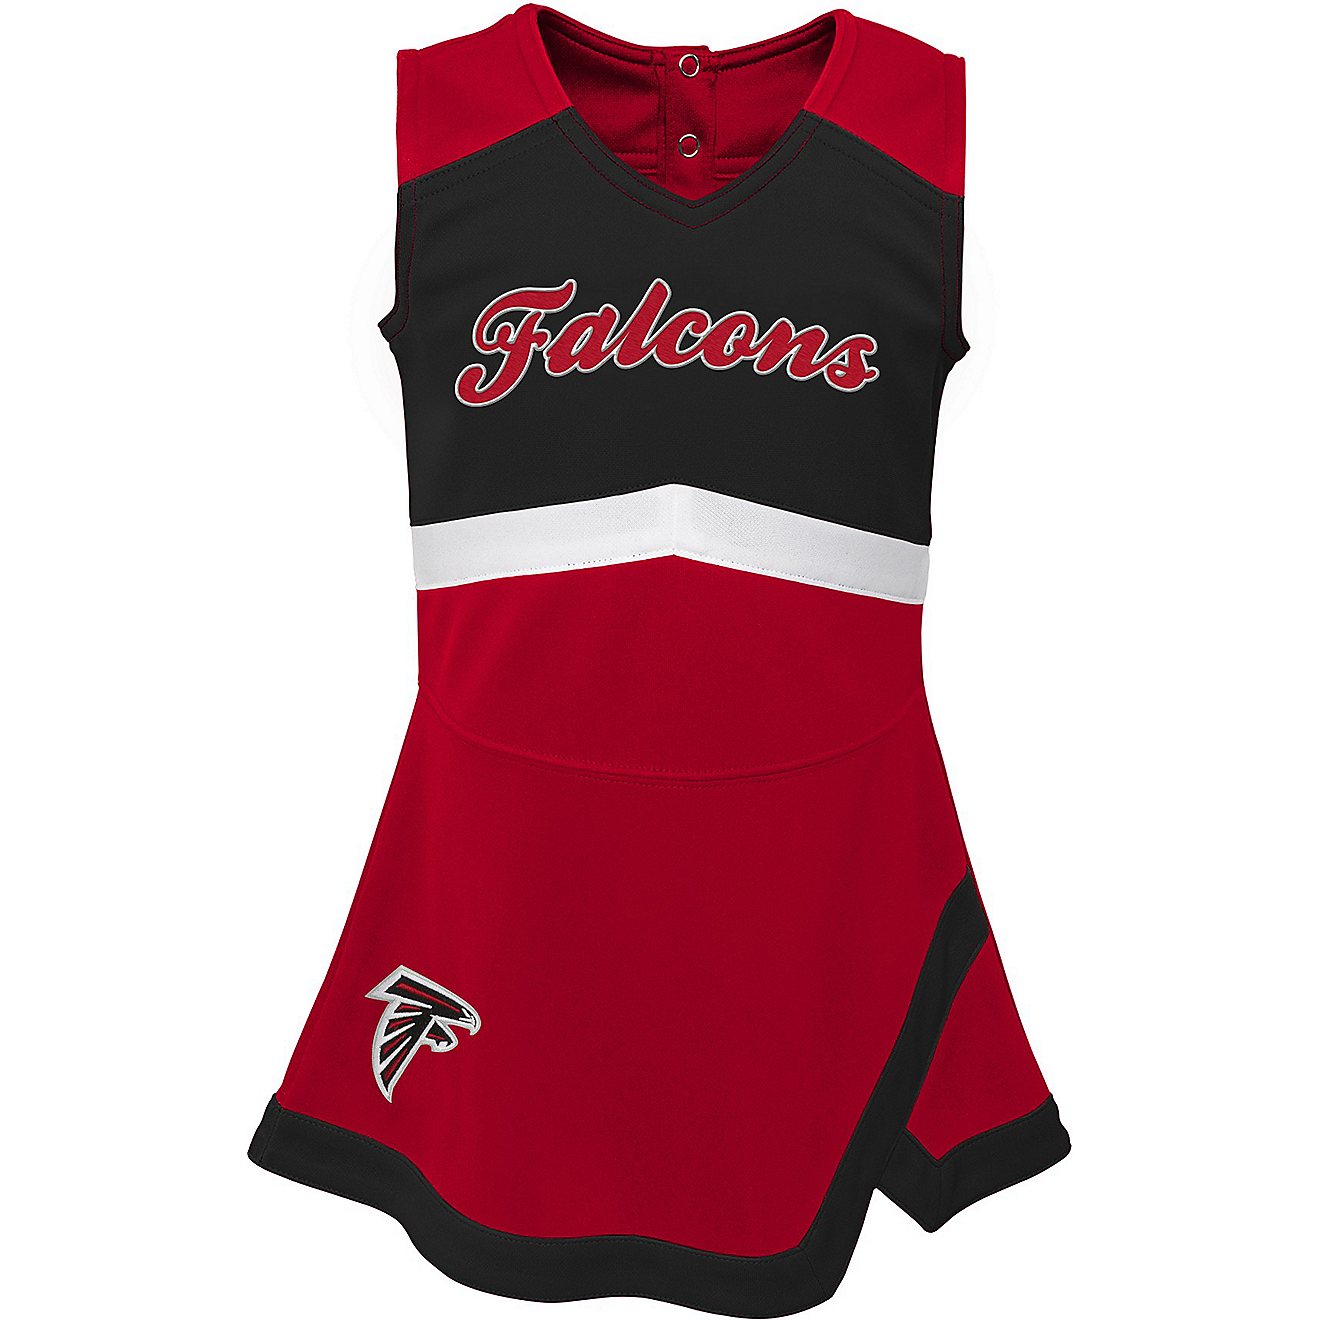 Outerstuff Toddler Girls' Atlanta Falcons Cheer Captain Jumper Dress